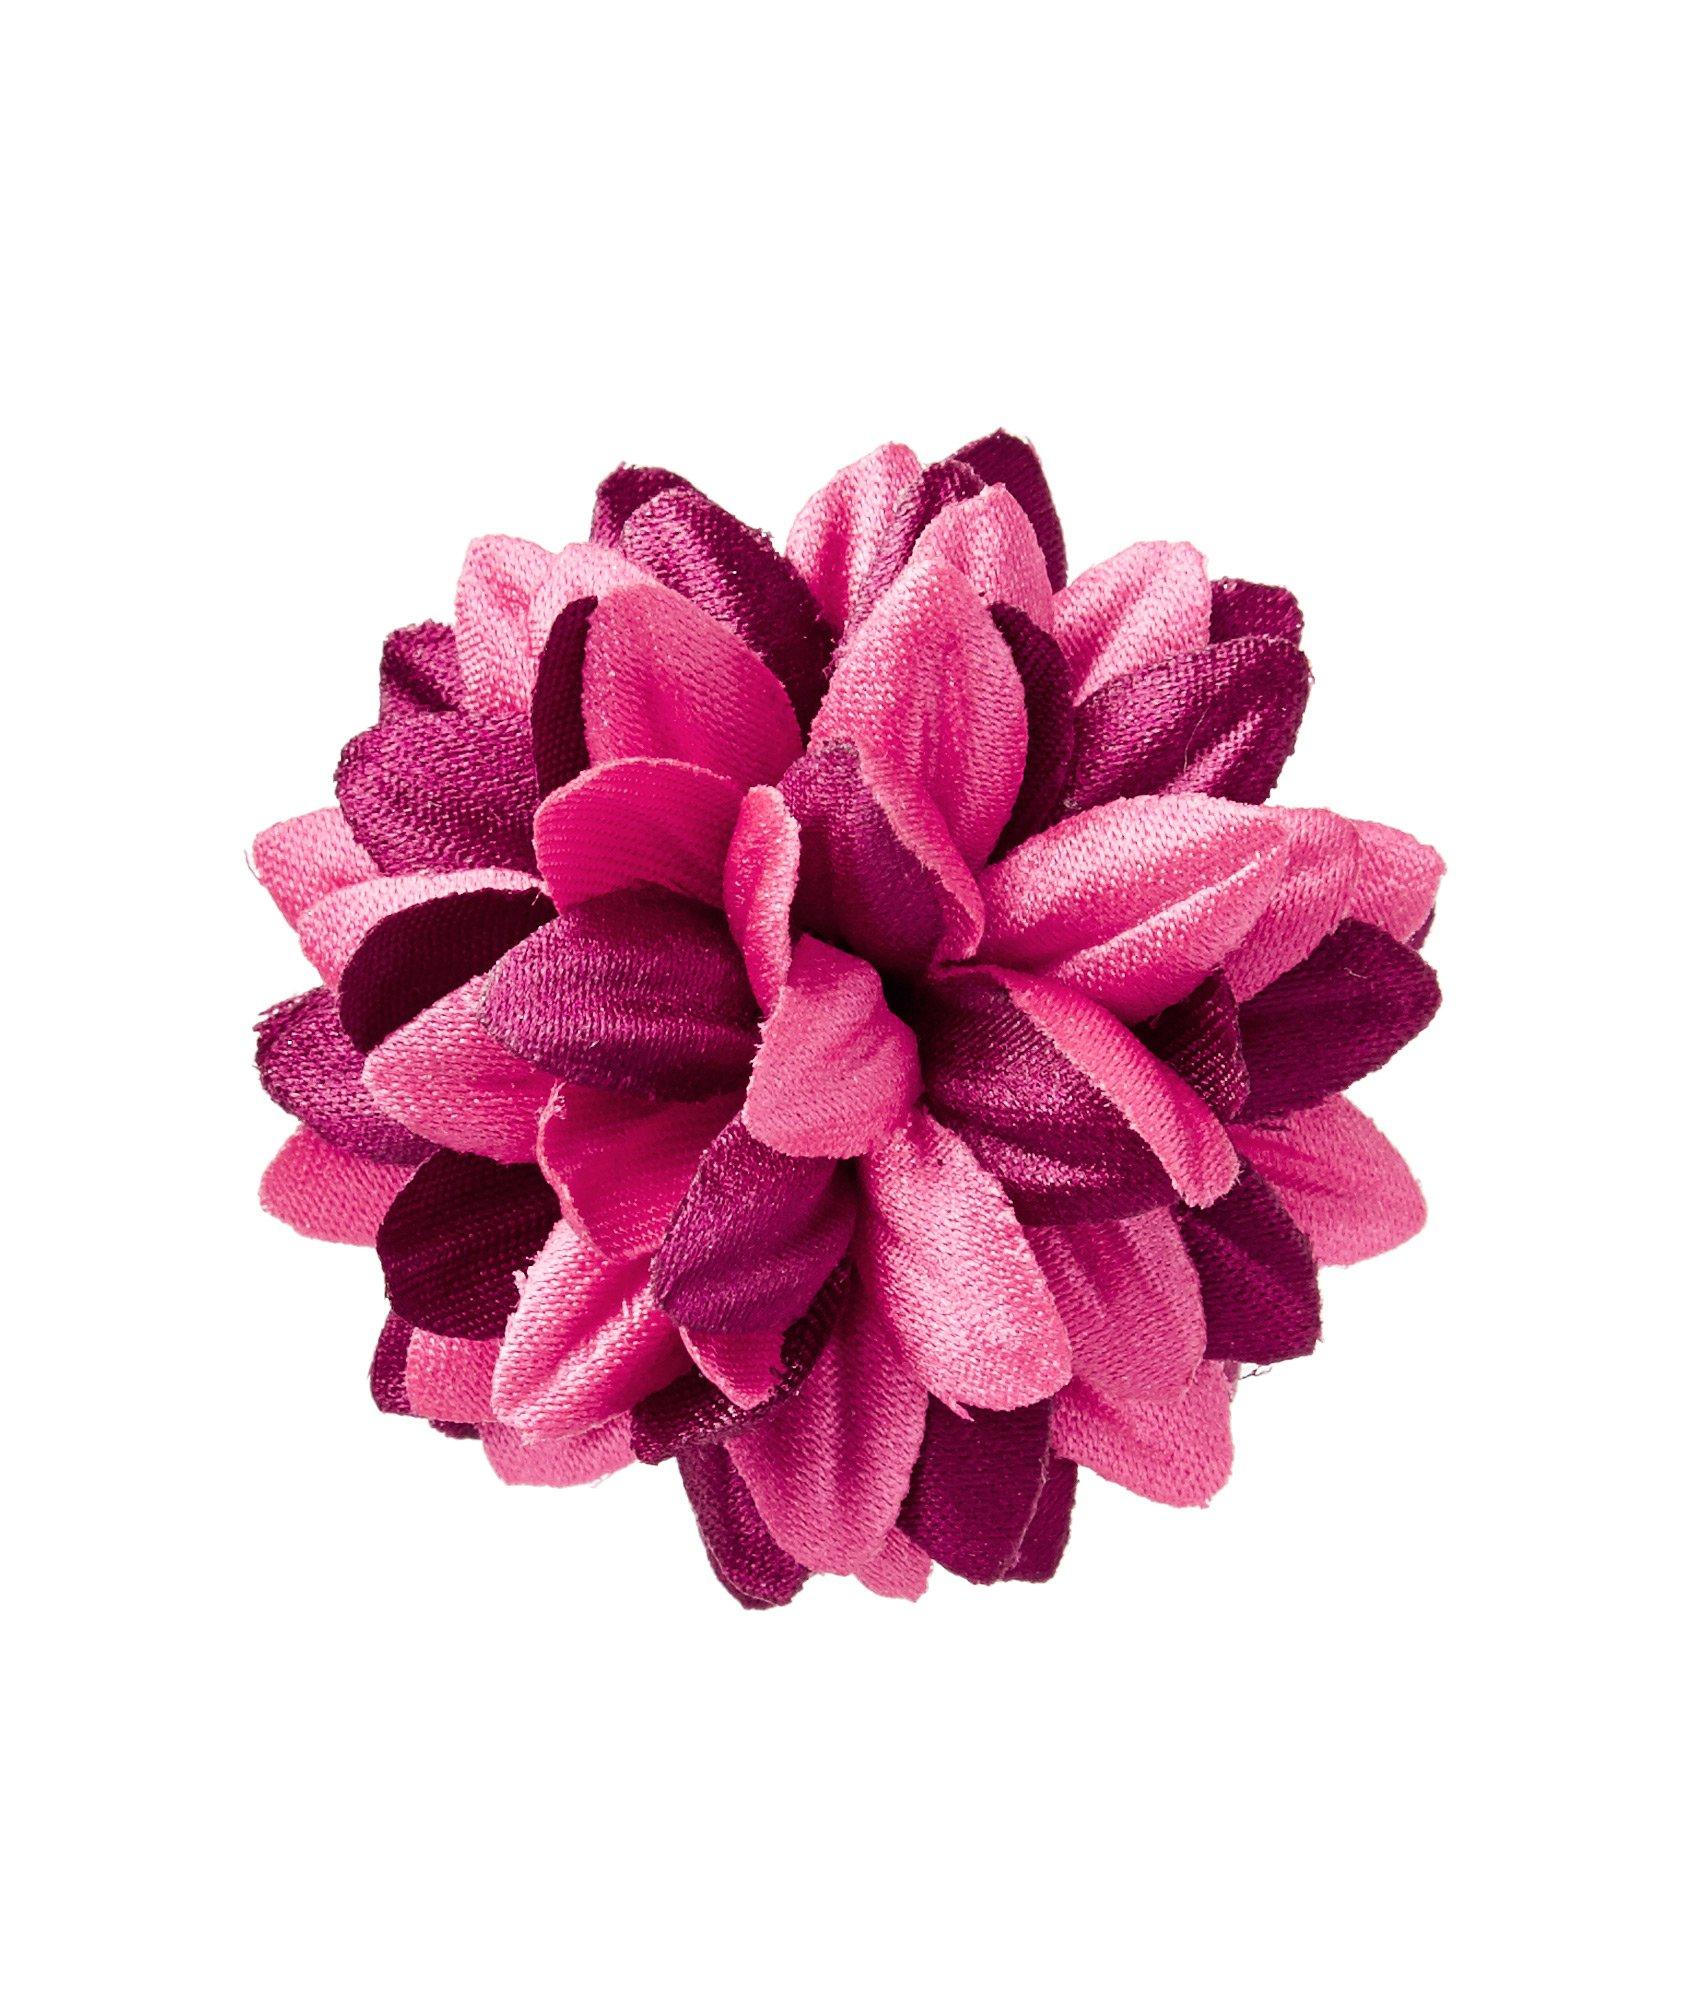 Épinglette en forme de fleur image 0